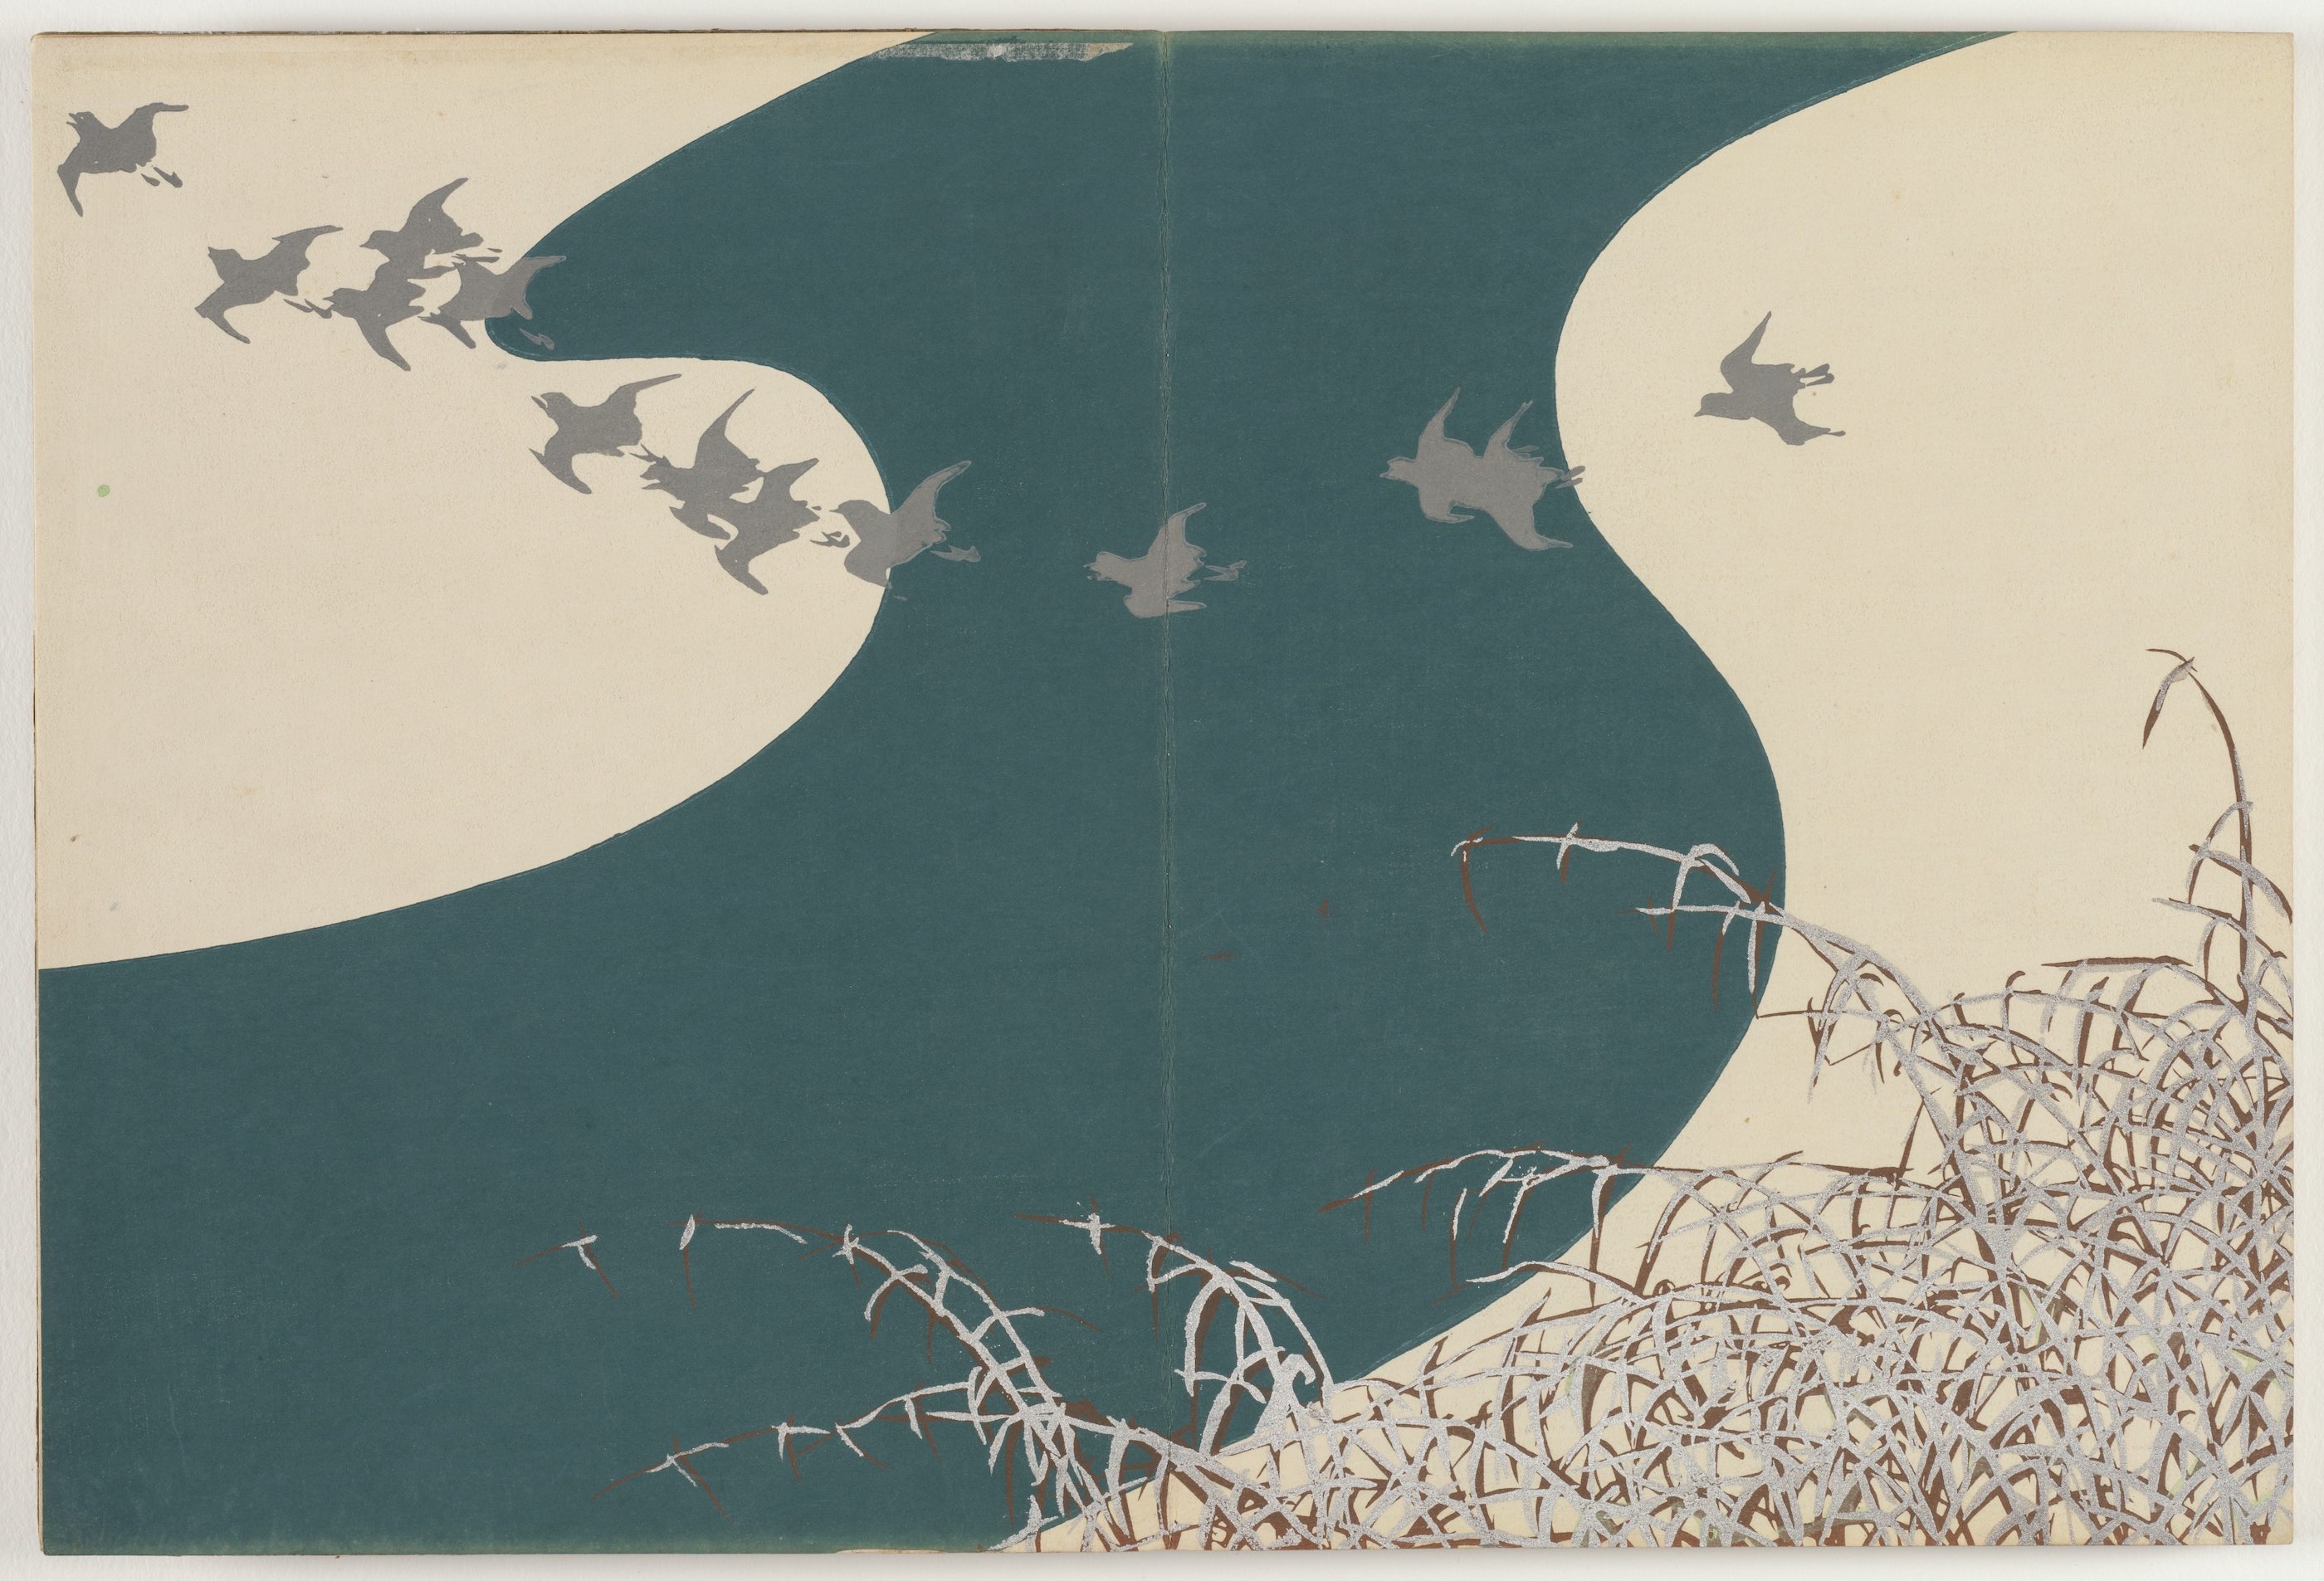 Fleurs d'une centaine de mondes : rivière en hiver by Kamisaka Sekka - 1909–10 - 29.9 x 22.1 cm Cleveland Museum of Art